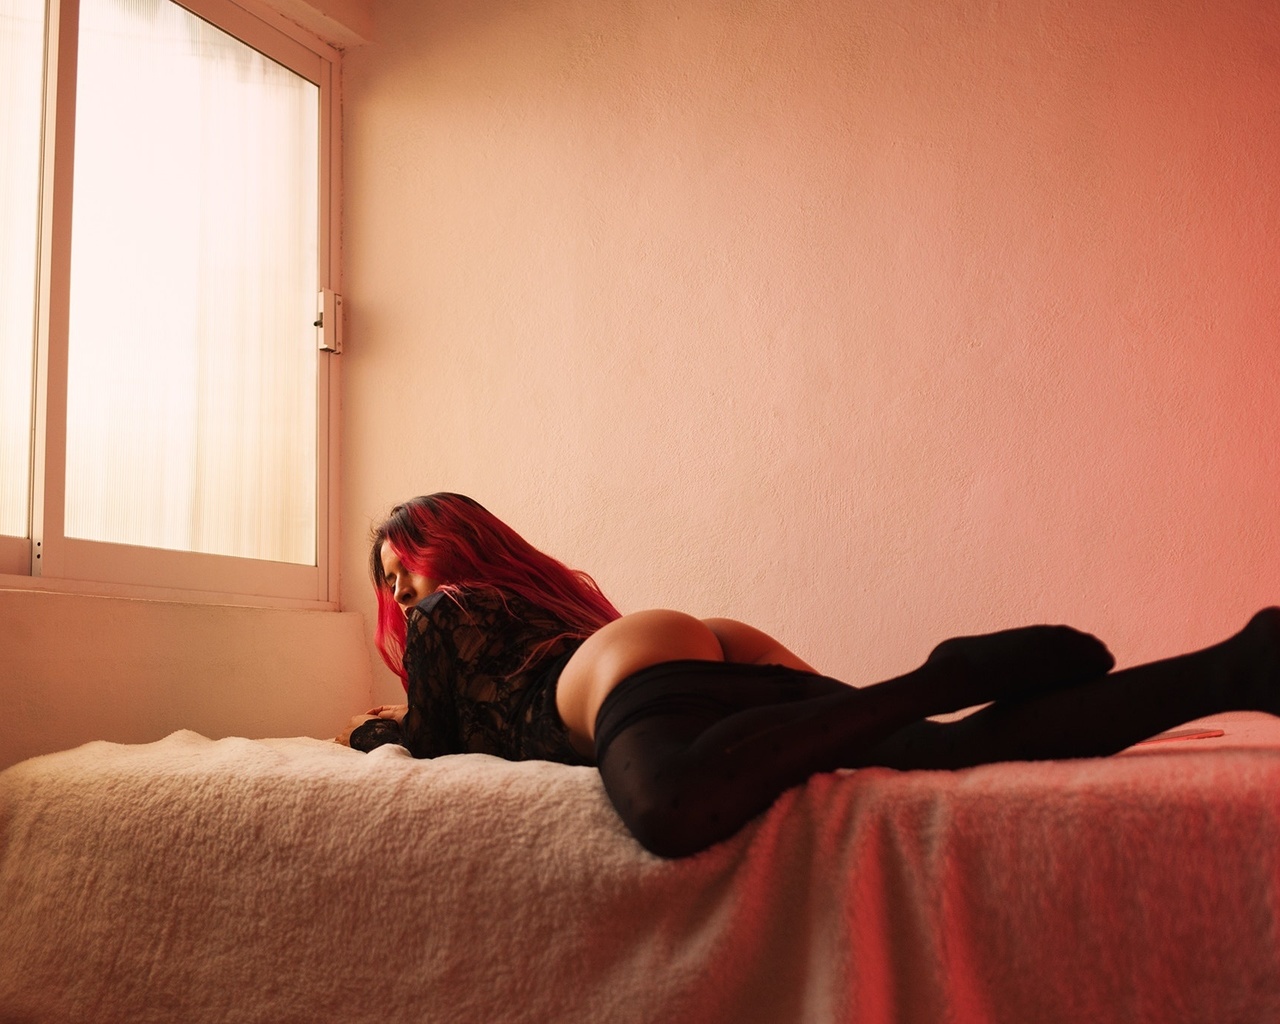 Фото несносной девушки задирающей кожаную юбку и показывающей свою задницу в постели